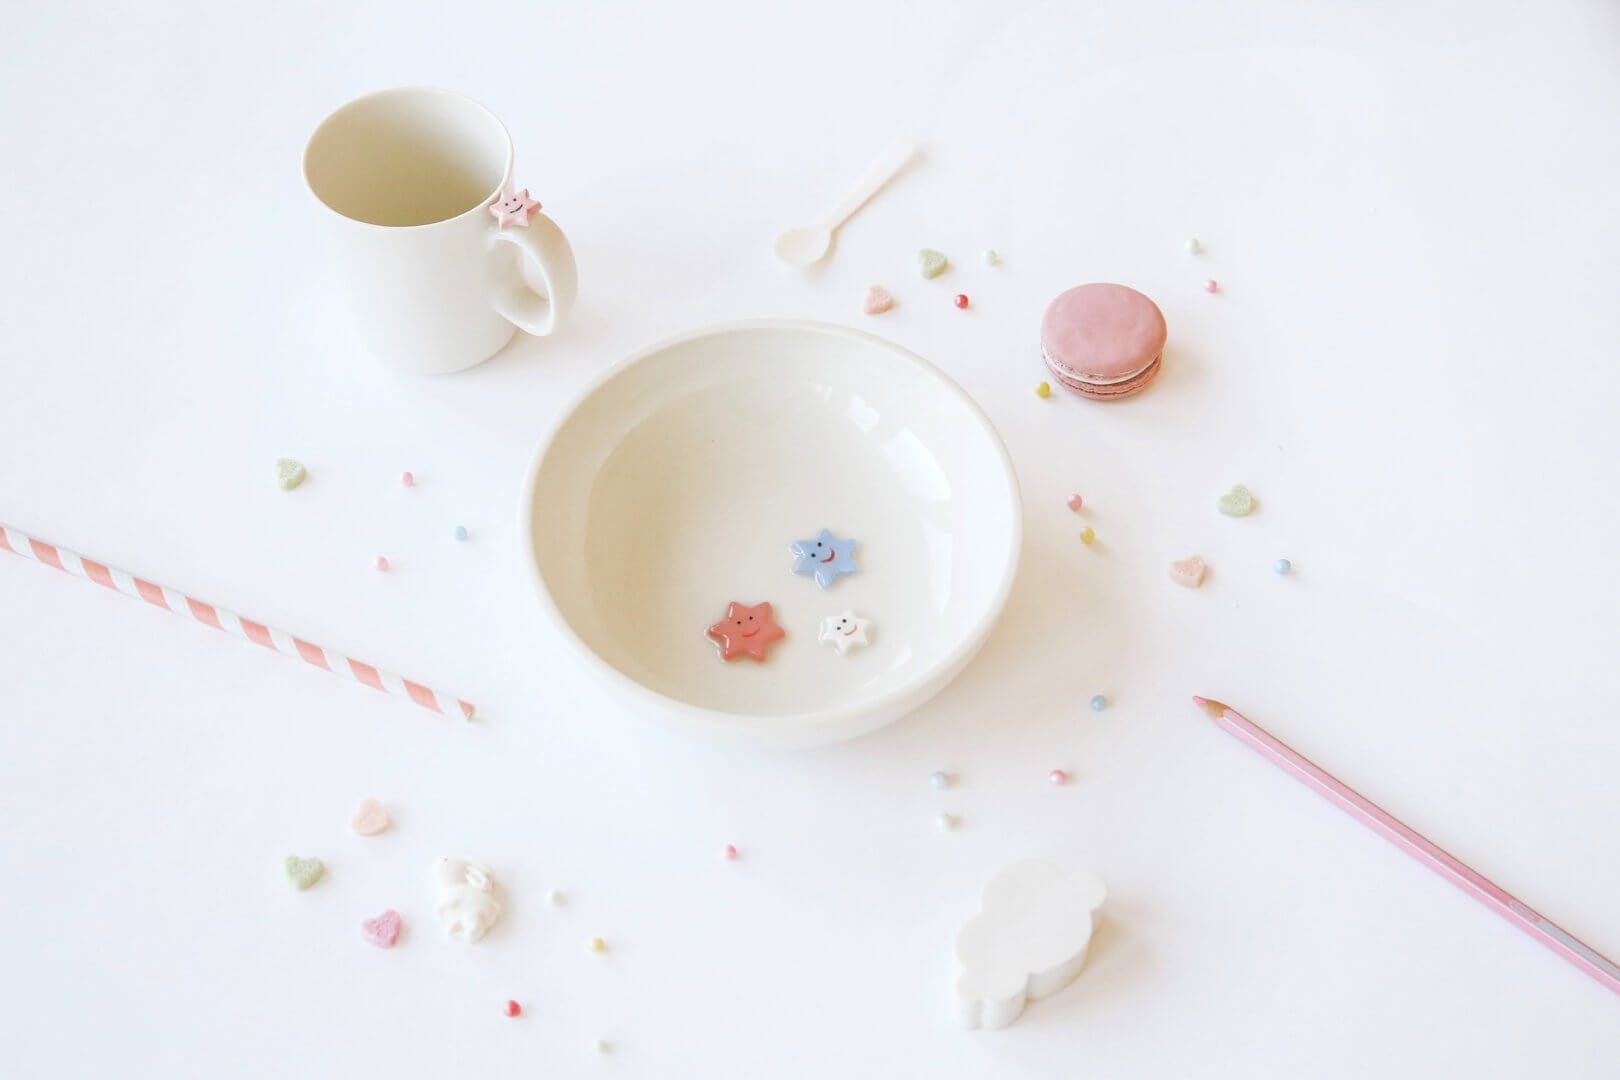 Smiling Table ceramics - un bol et une tasse faits à la main et décorés d'étoiles souriantes parmi de jolis accessoires pastel sur un fond blanc épuré.